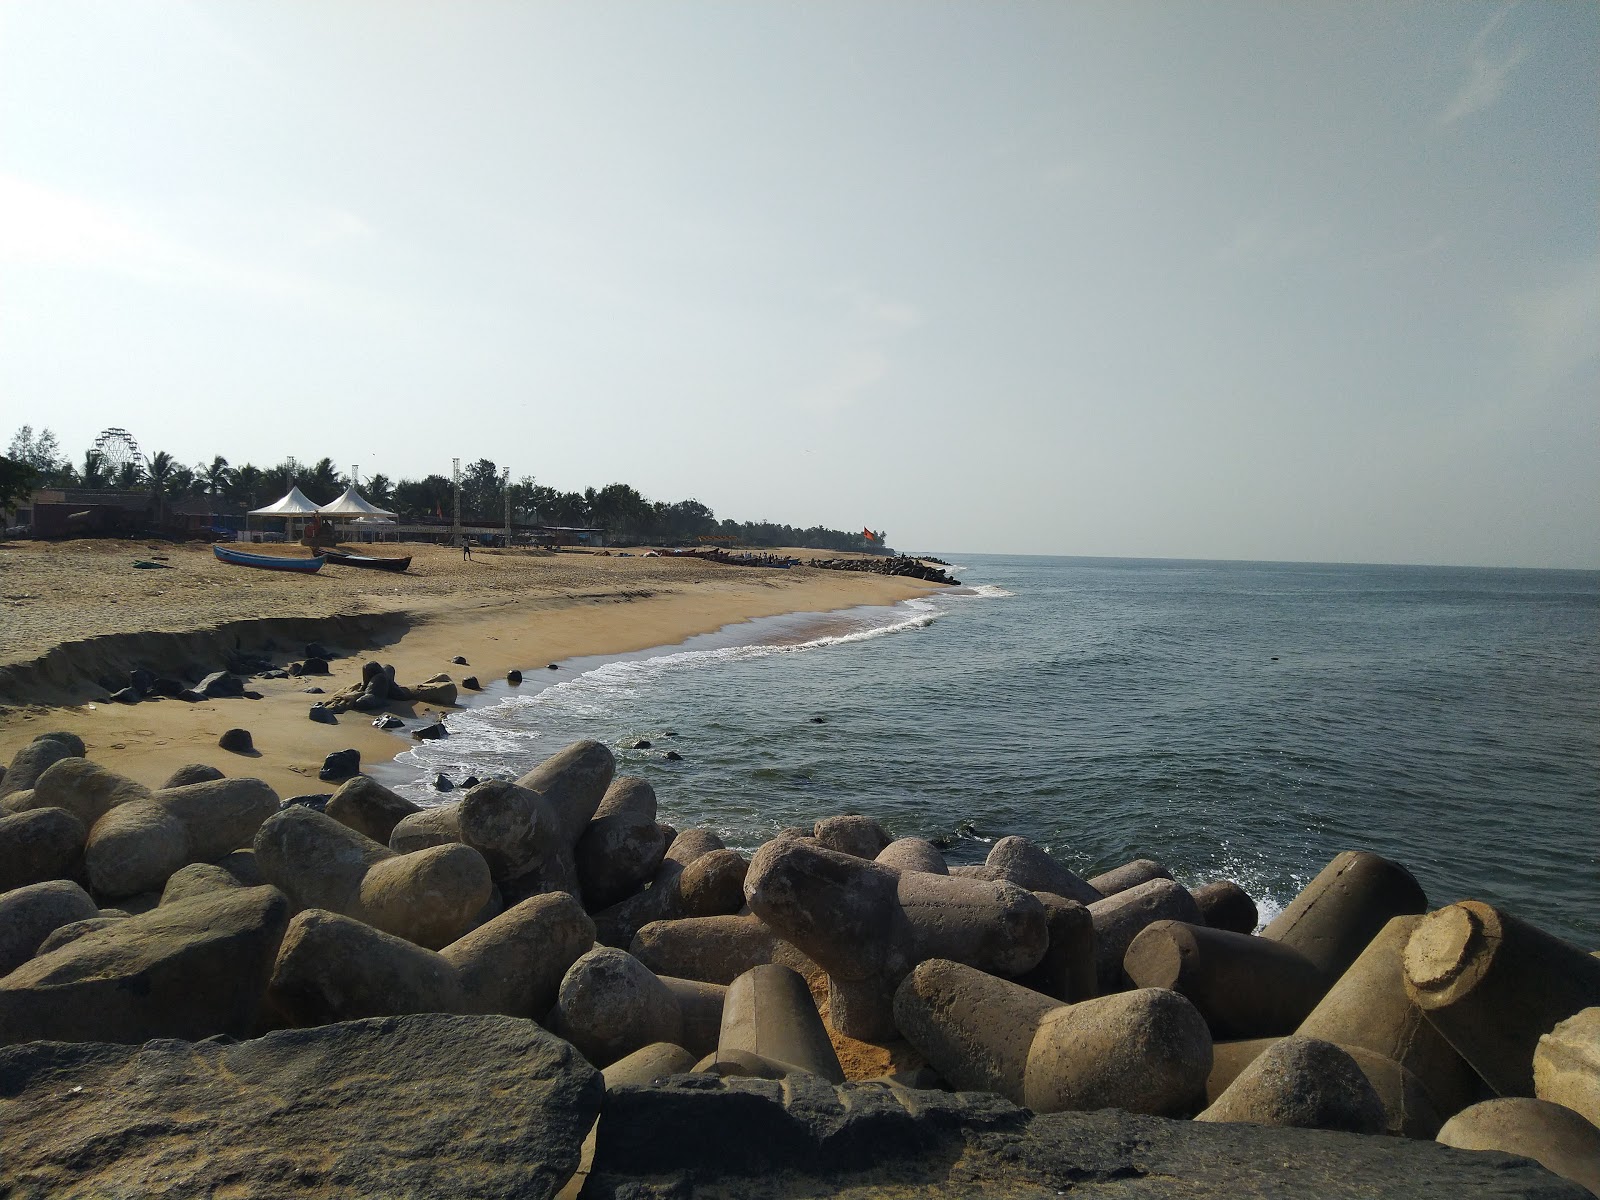 Ullal beach'in fotoğrafı geniş plaj ile birlikte